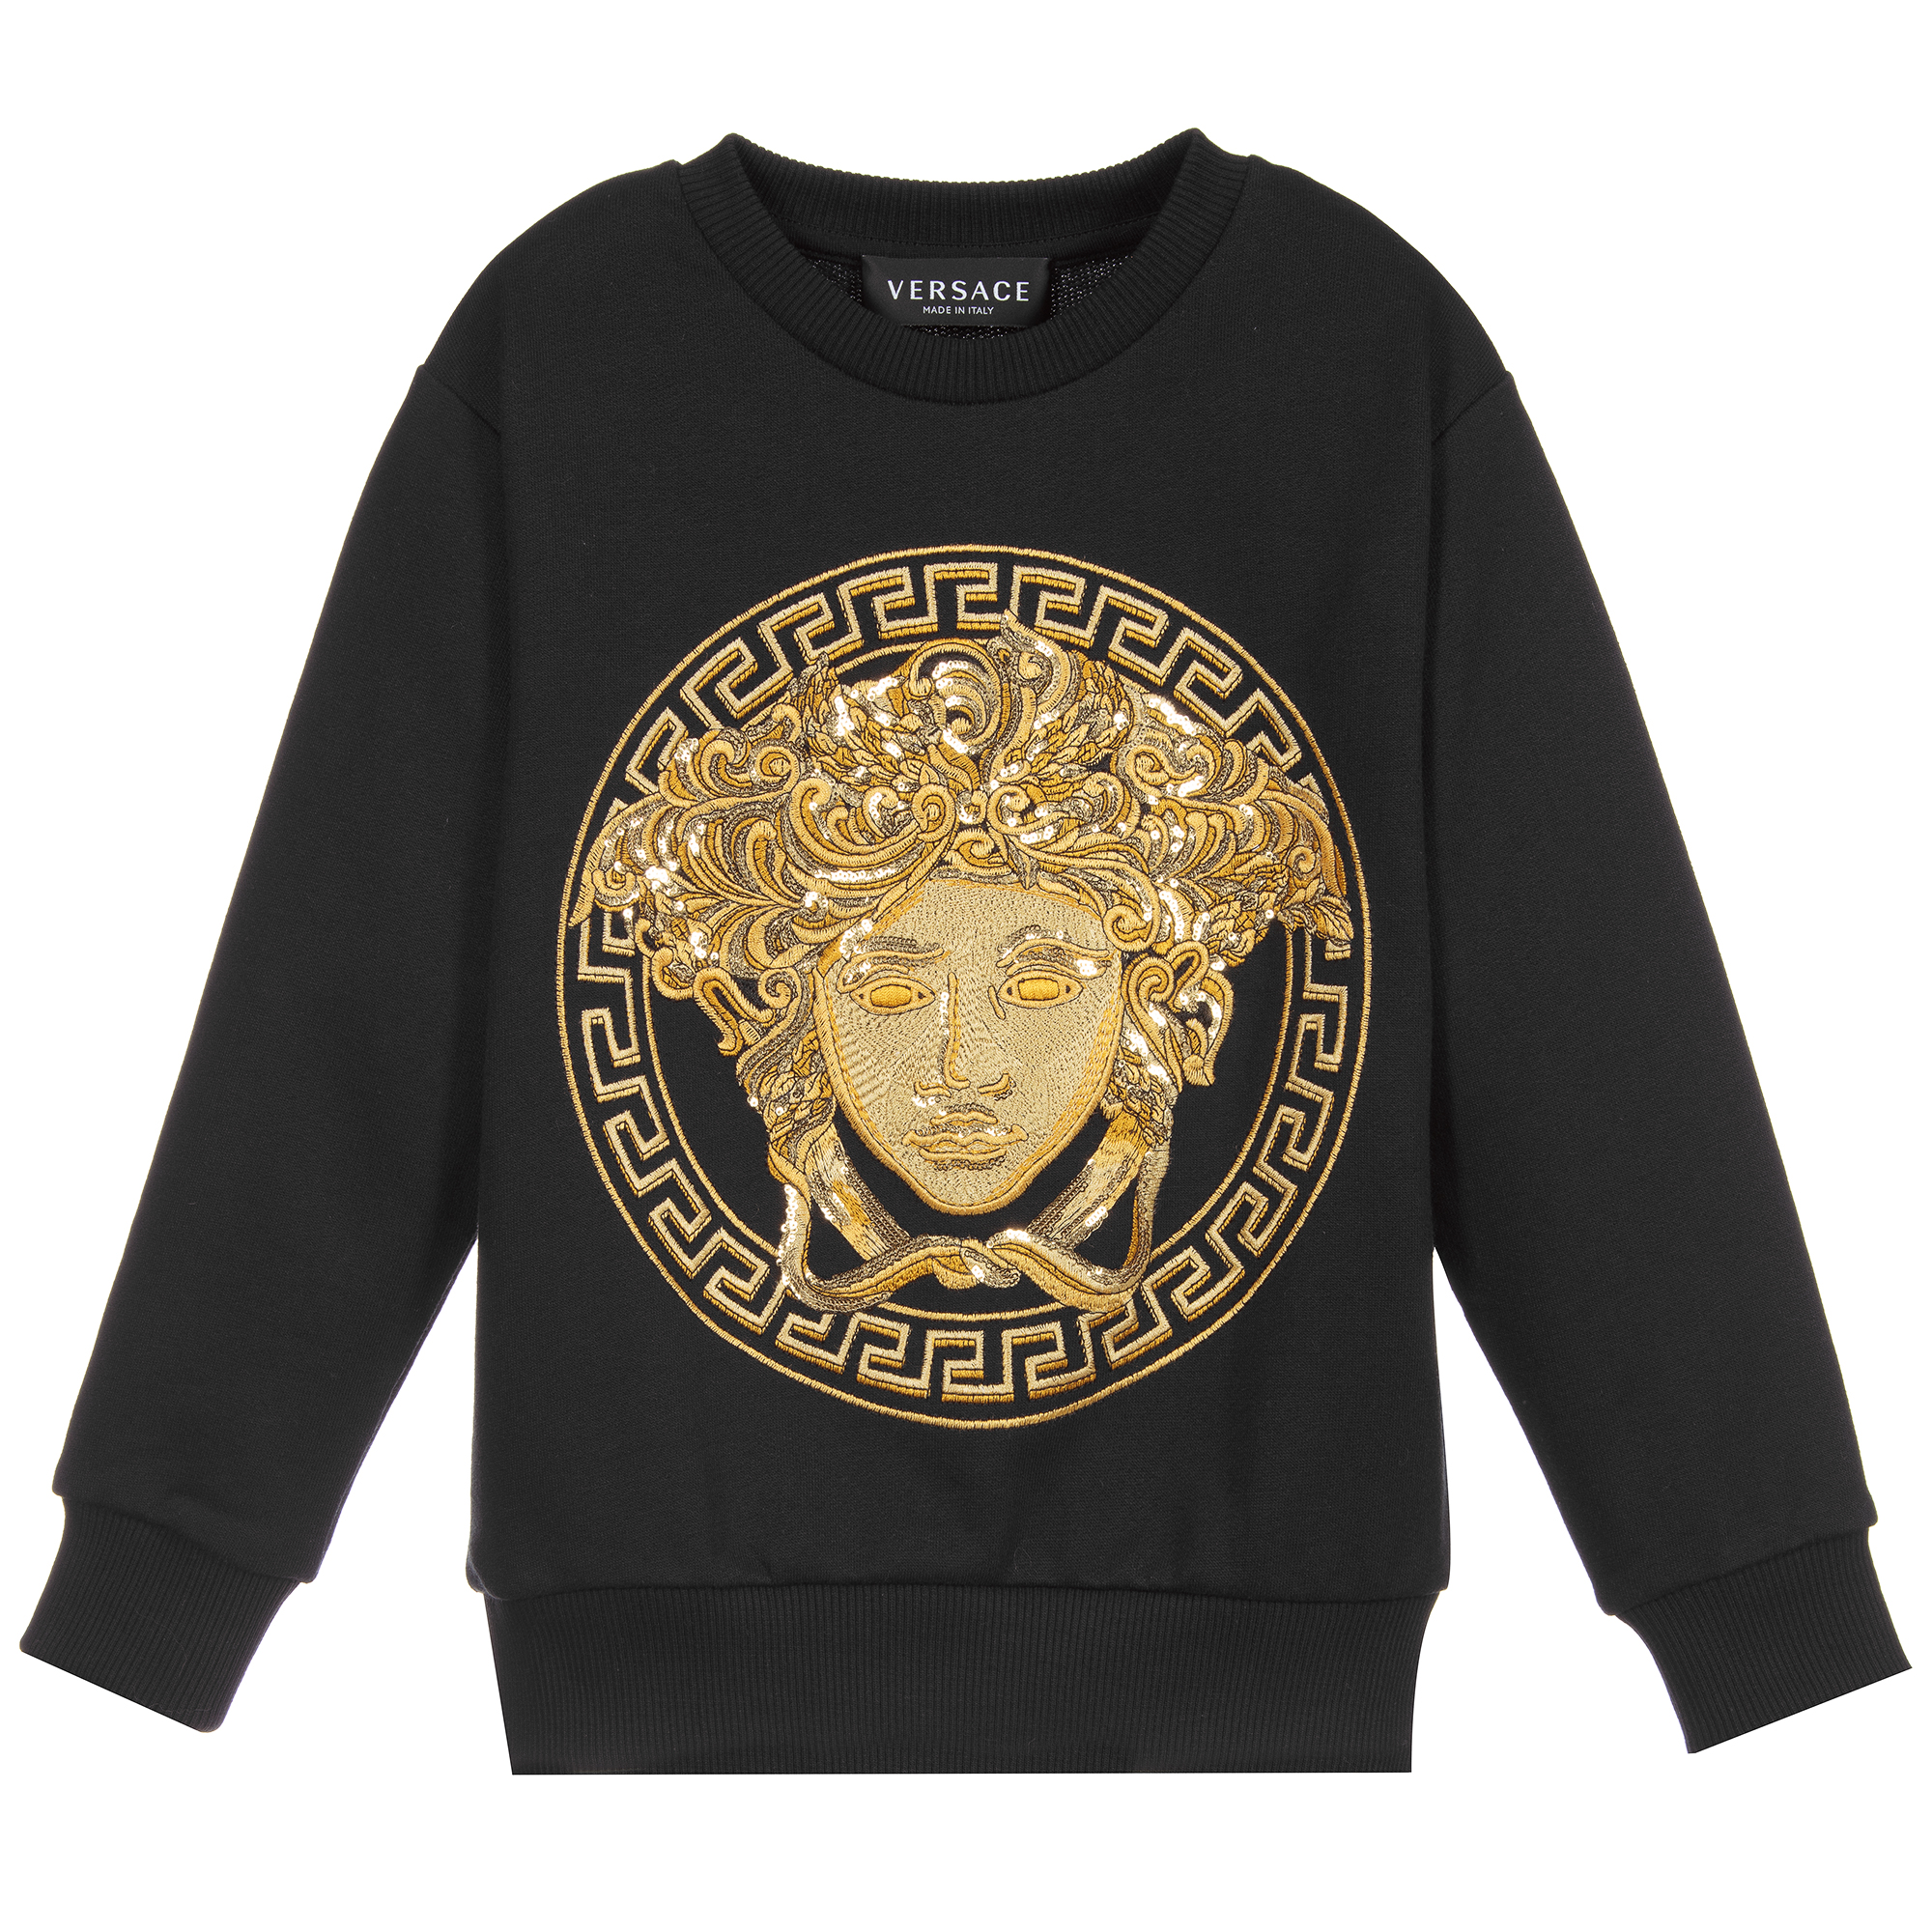 versace gold sweatshirt